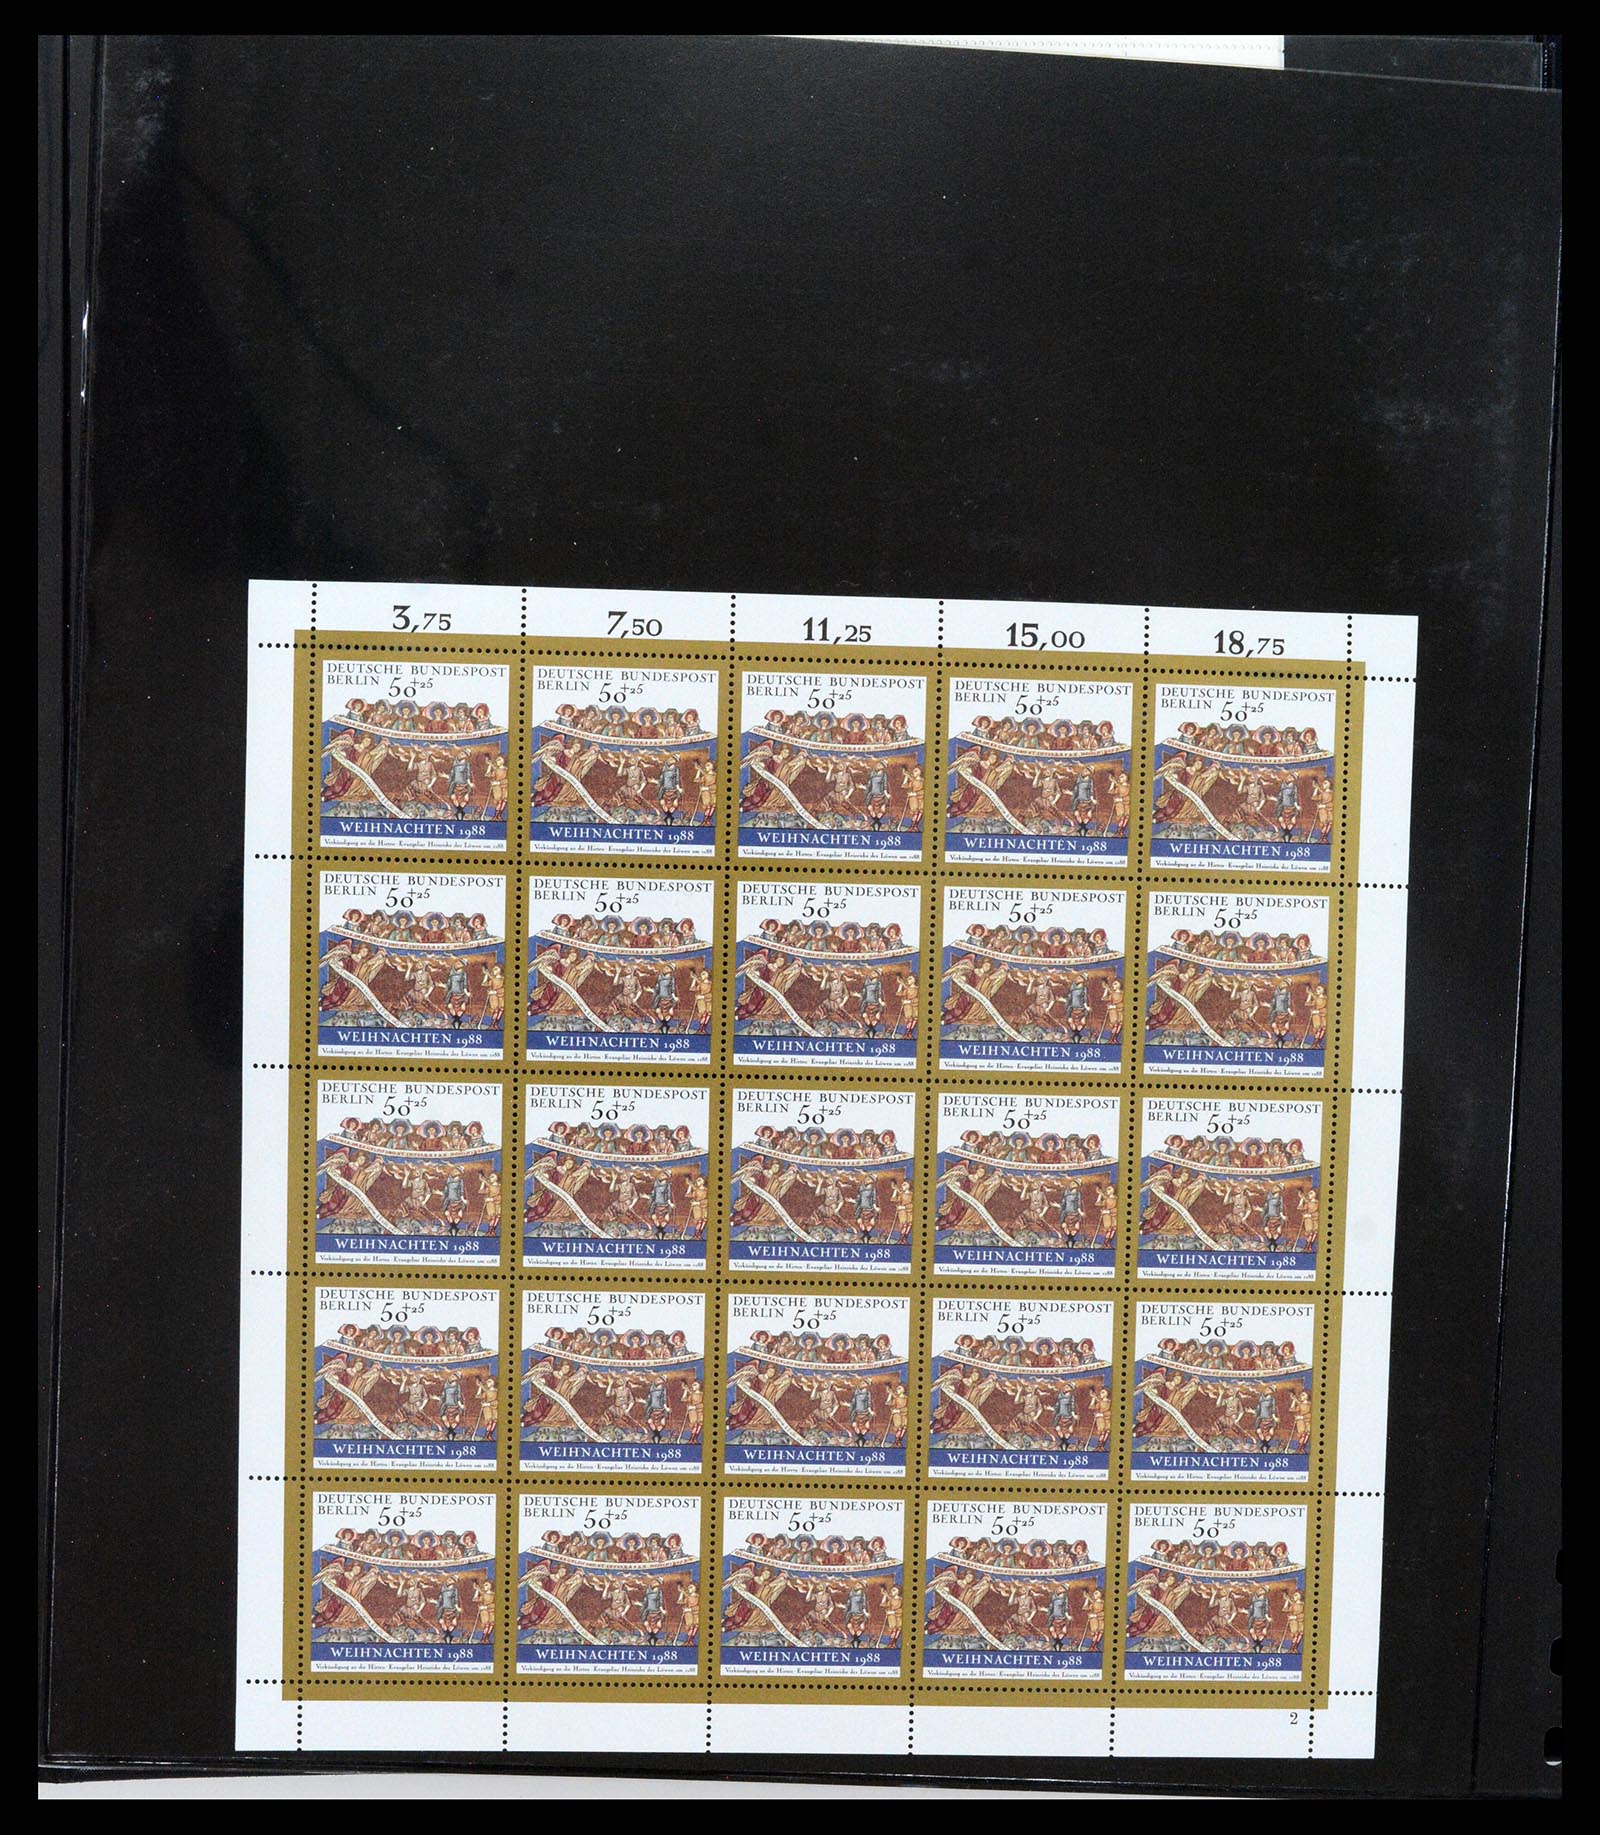 37345 044 - Stamp collection 37345 European countries souvenir sheets.